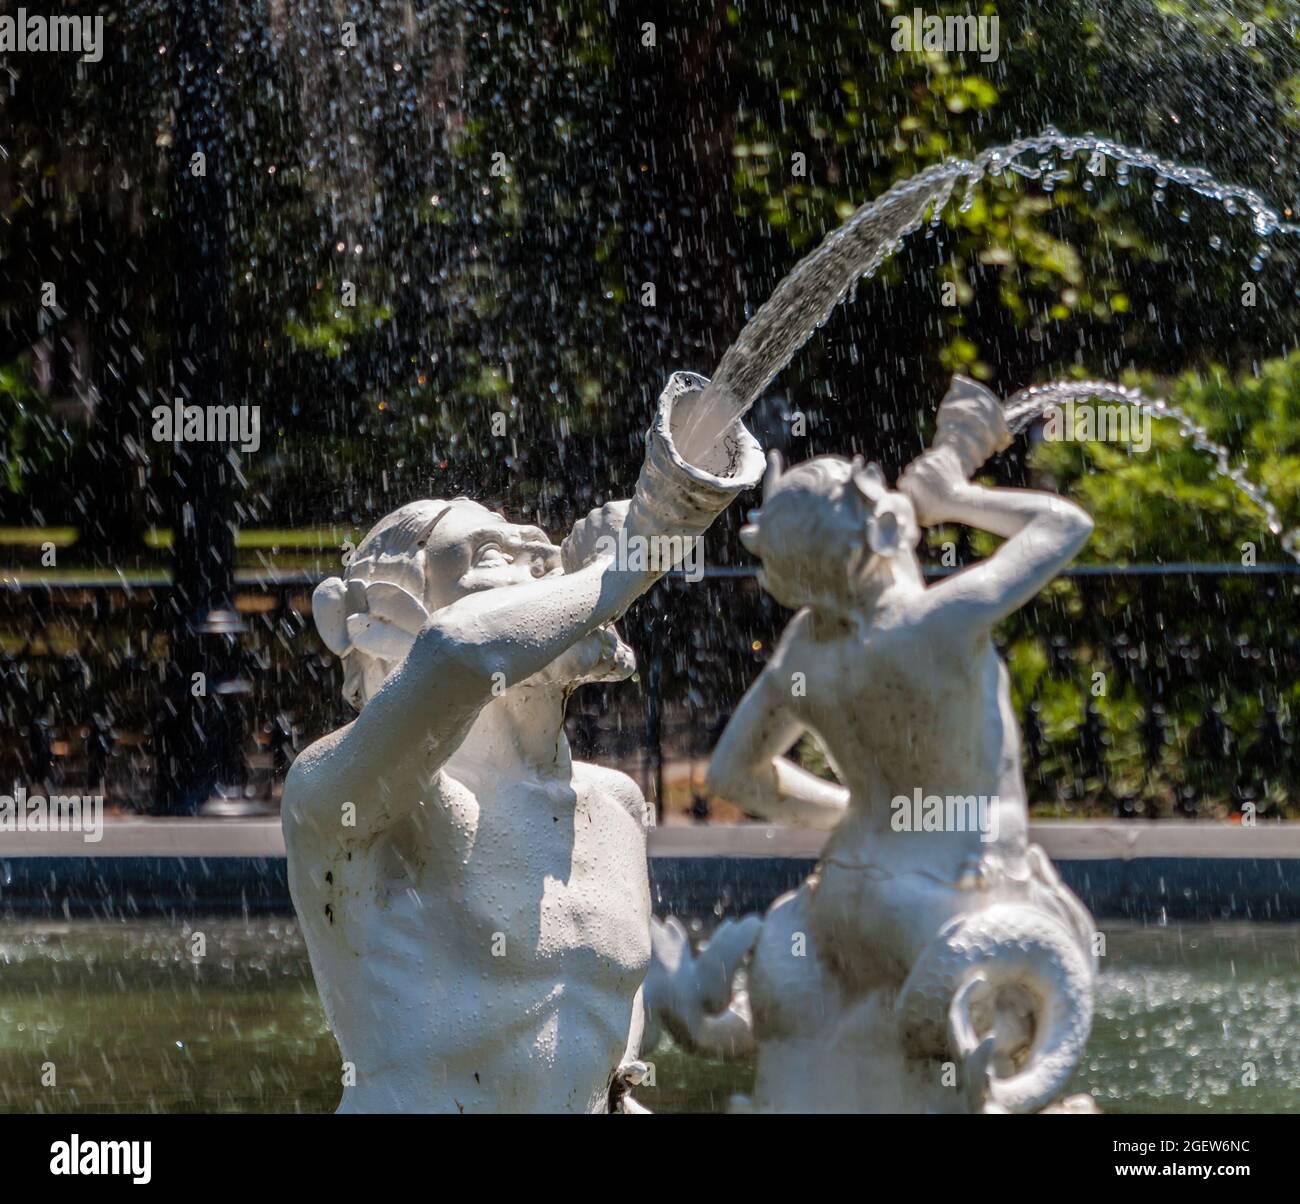 Closeup of Mythical Creatures In The Forsythe Park Fountain, Savannah, Georgia, USA Stock Photo